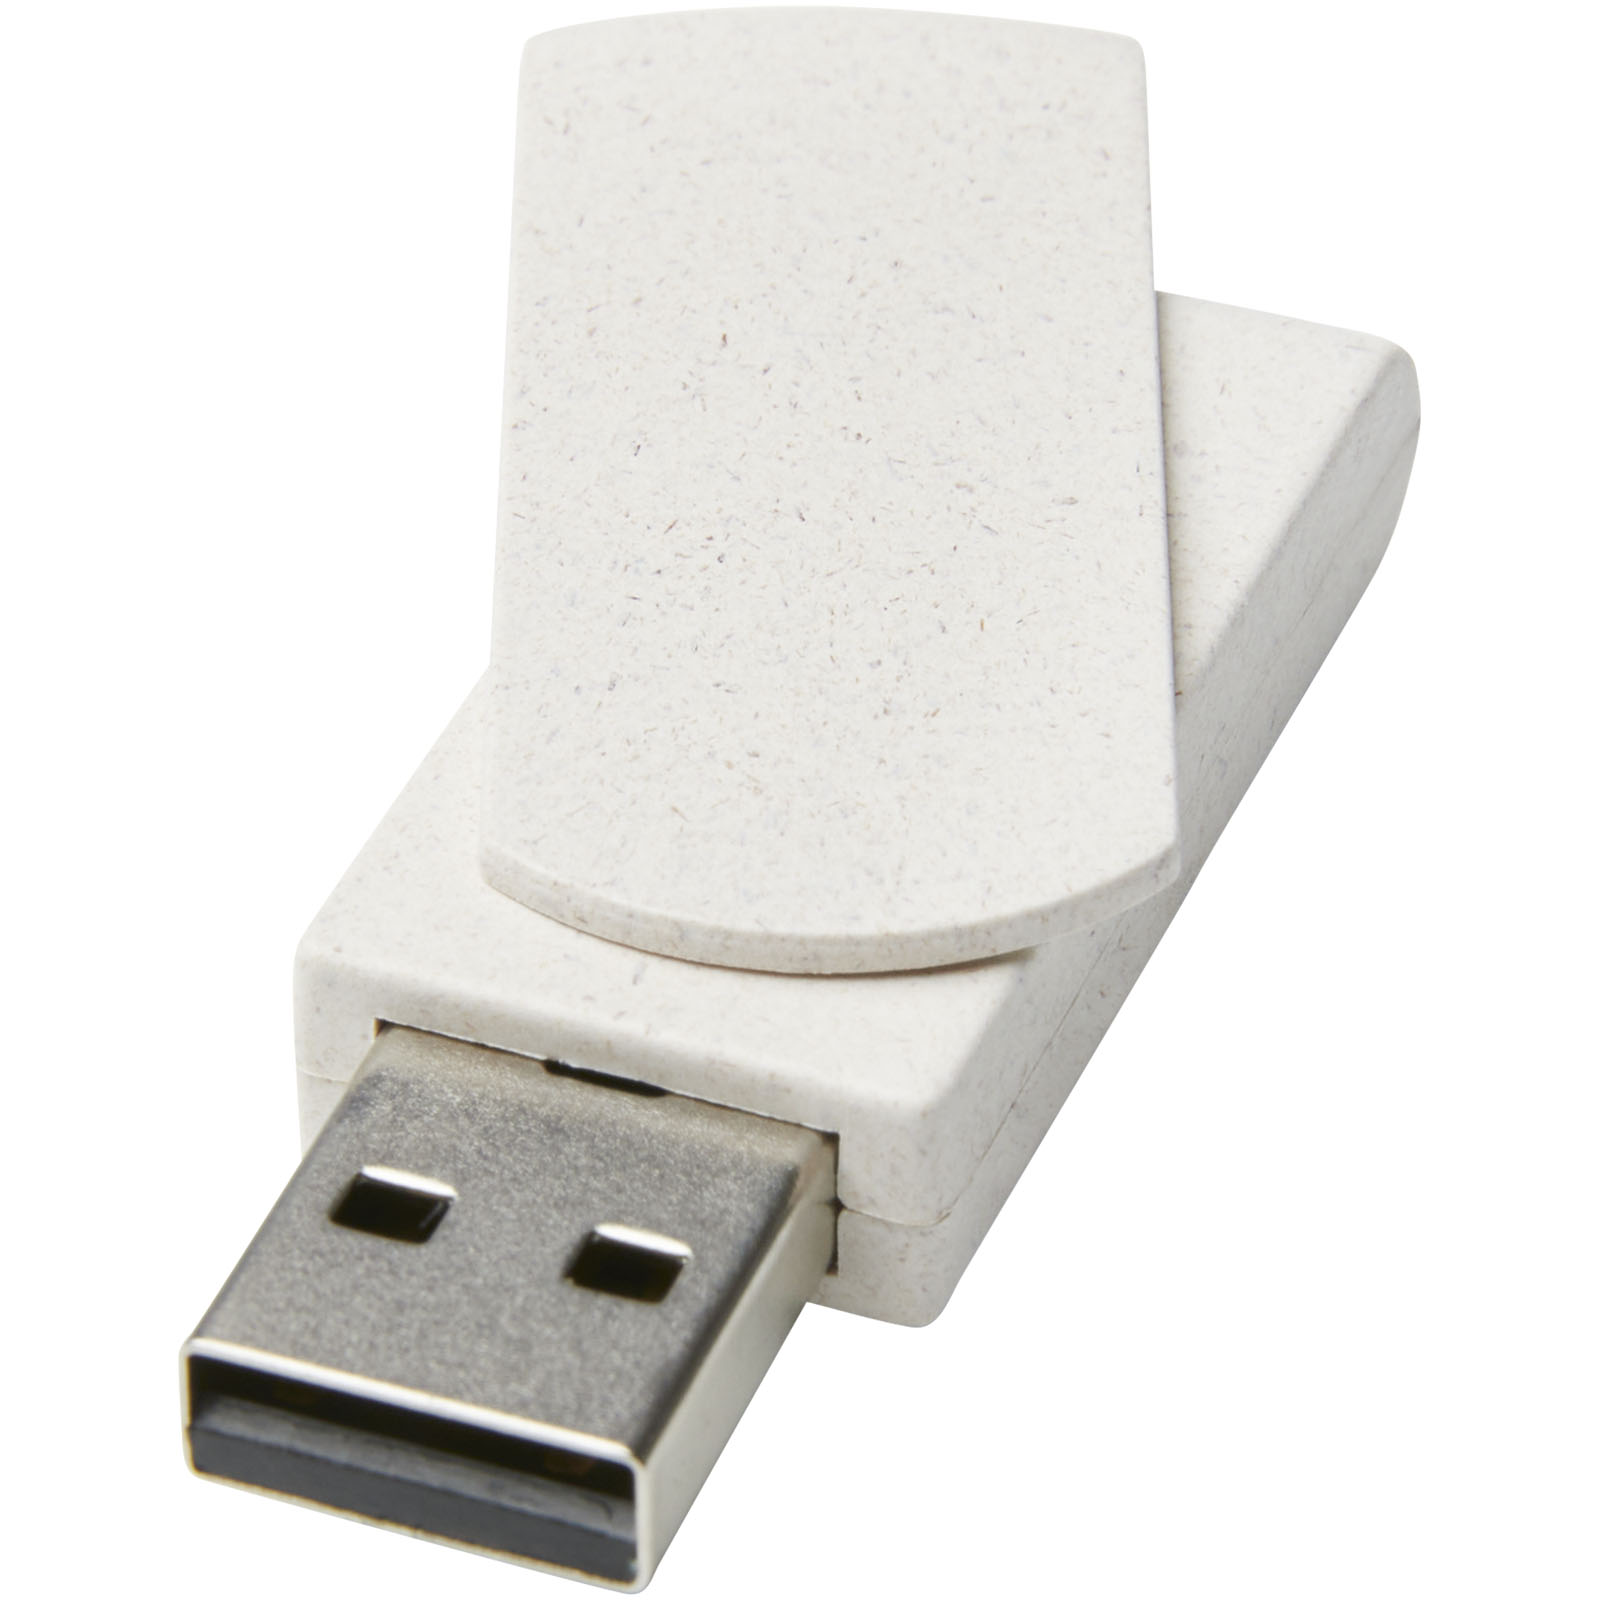 Technologie - Clé USB Rotate 4 Go en paille de blé